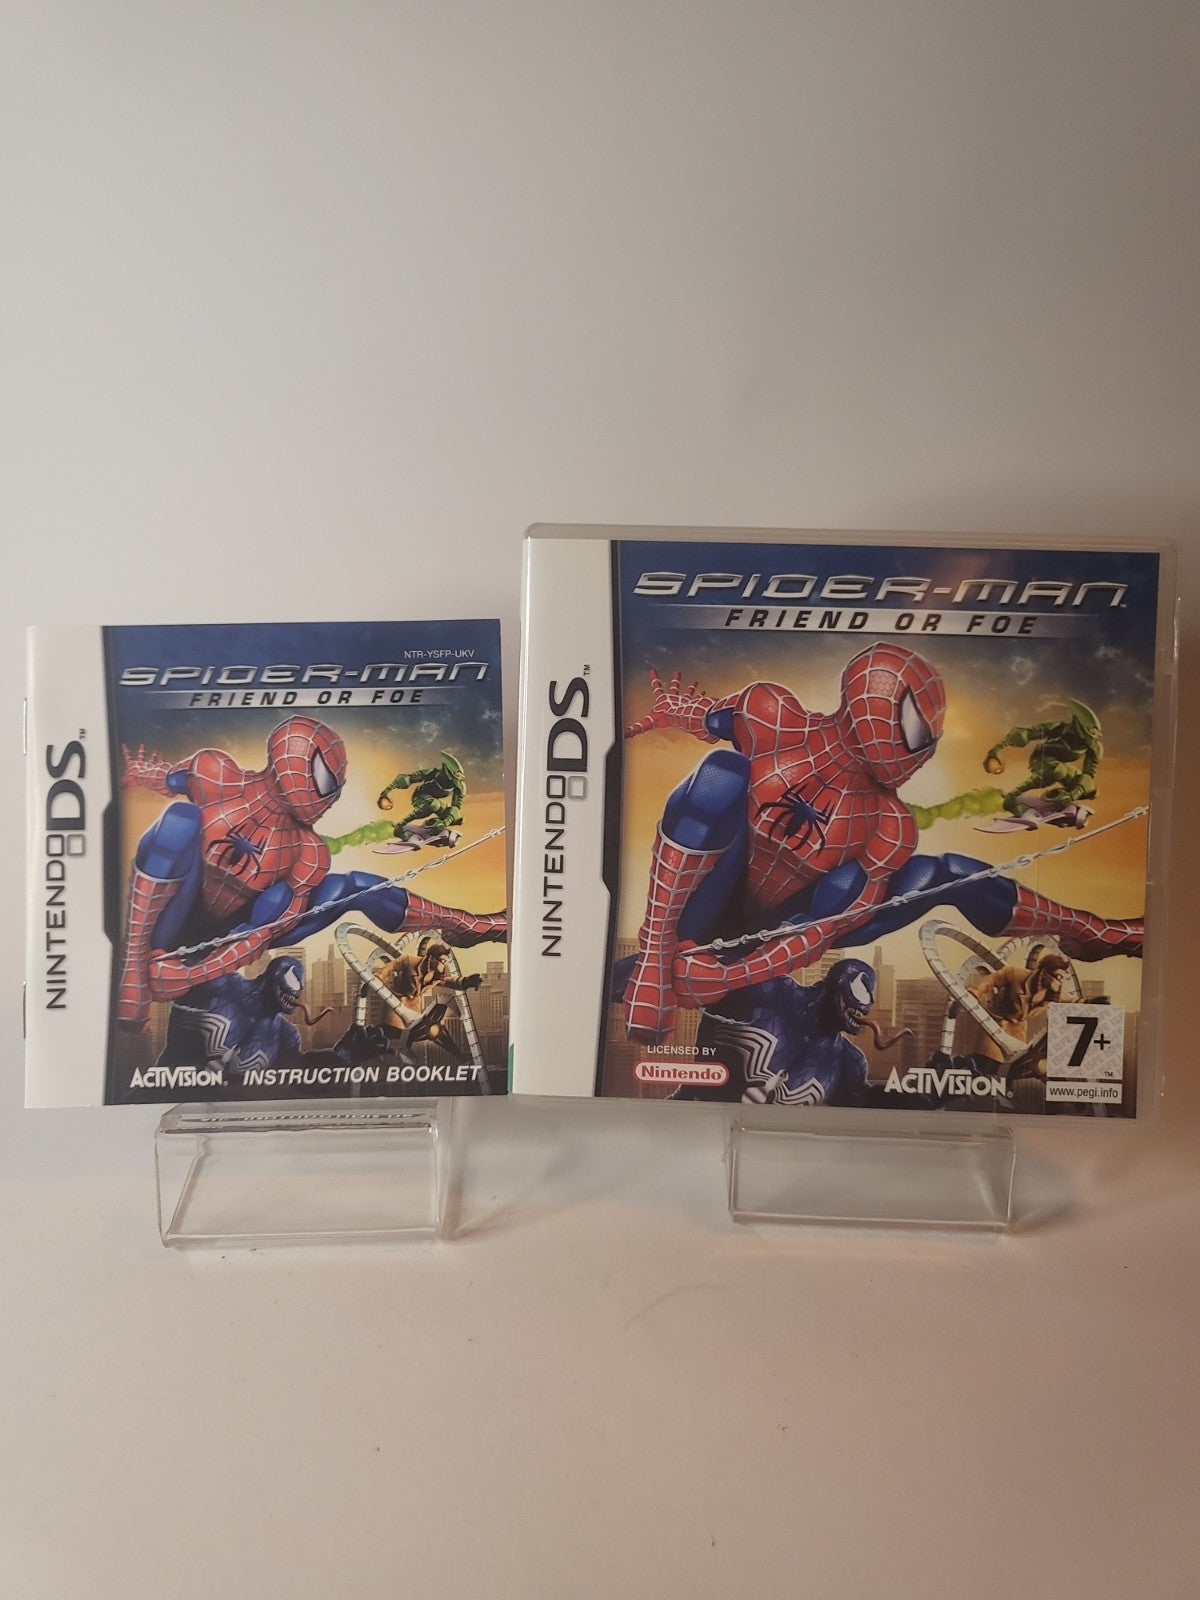 Spider-man Friend or Foe Nintendo DS